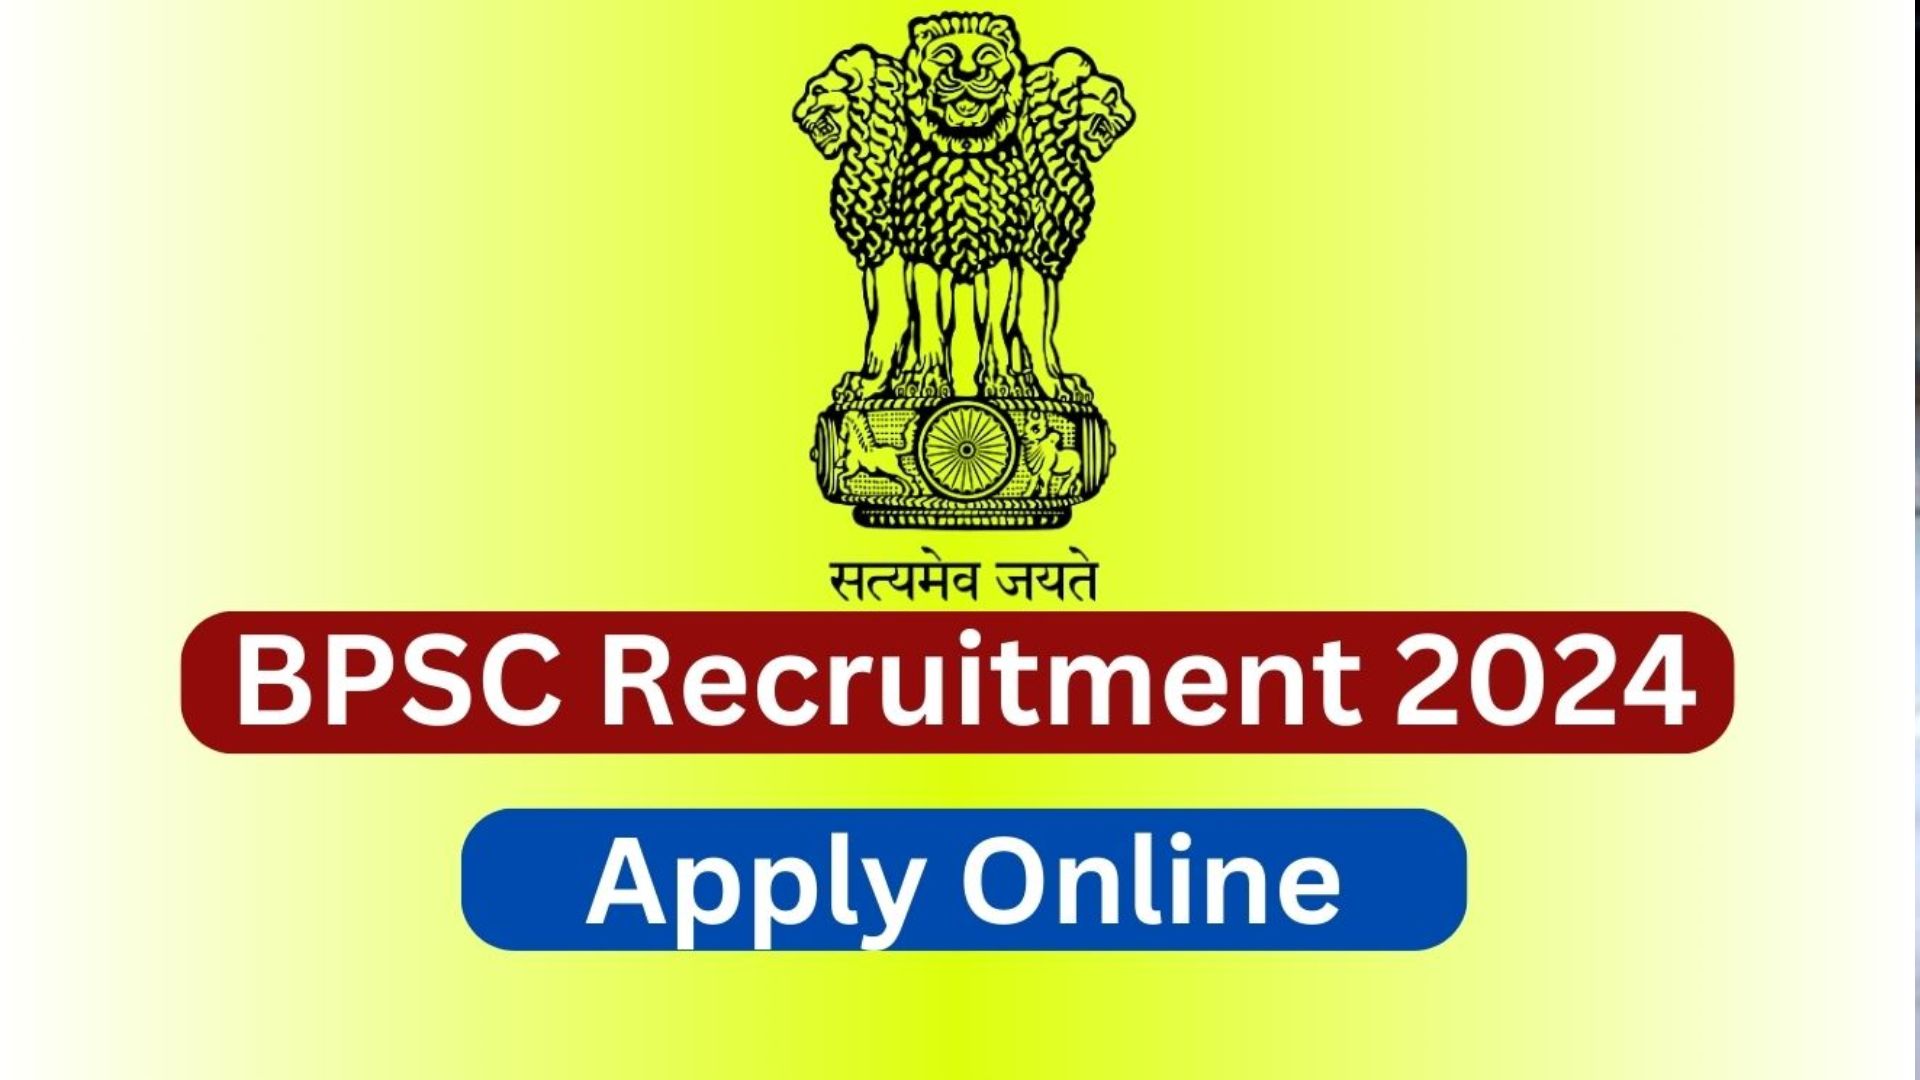 BPSC Recruitment 2024: बिहार में ब्लॉक हॉर्टिकल्चर ऑफिसर पदों के लिए दूसरा मौका, जान लें लास्ट डेट...जल्द करें अप्लाई